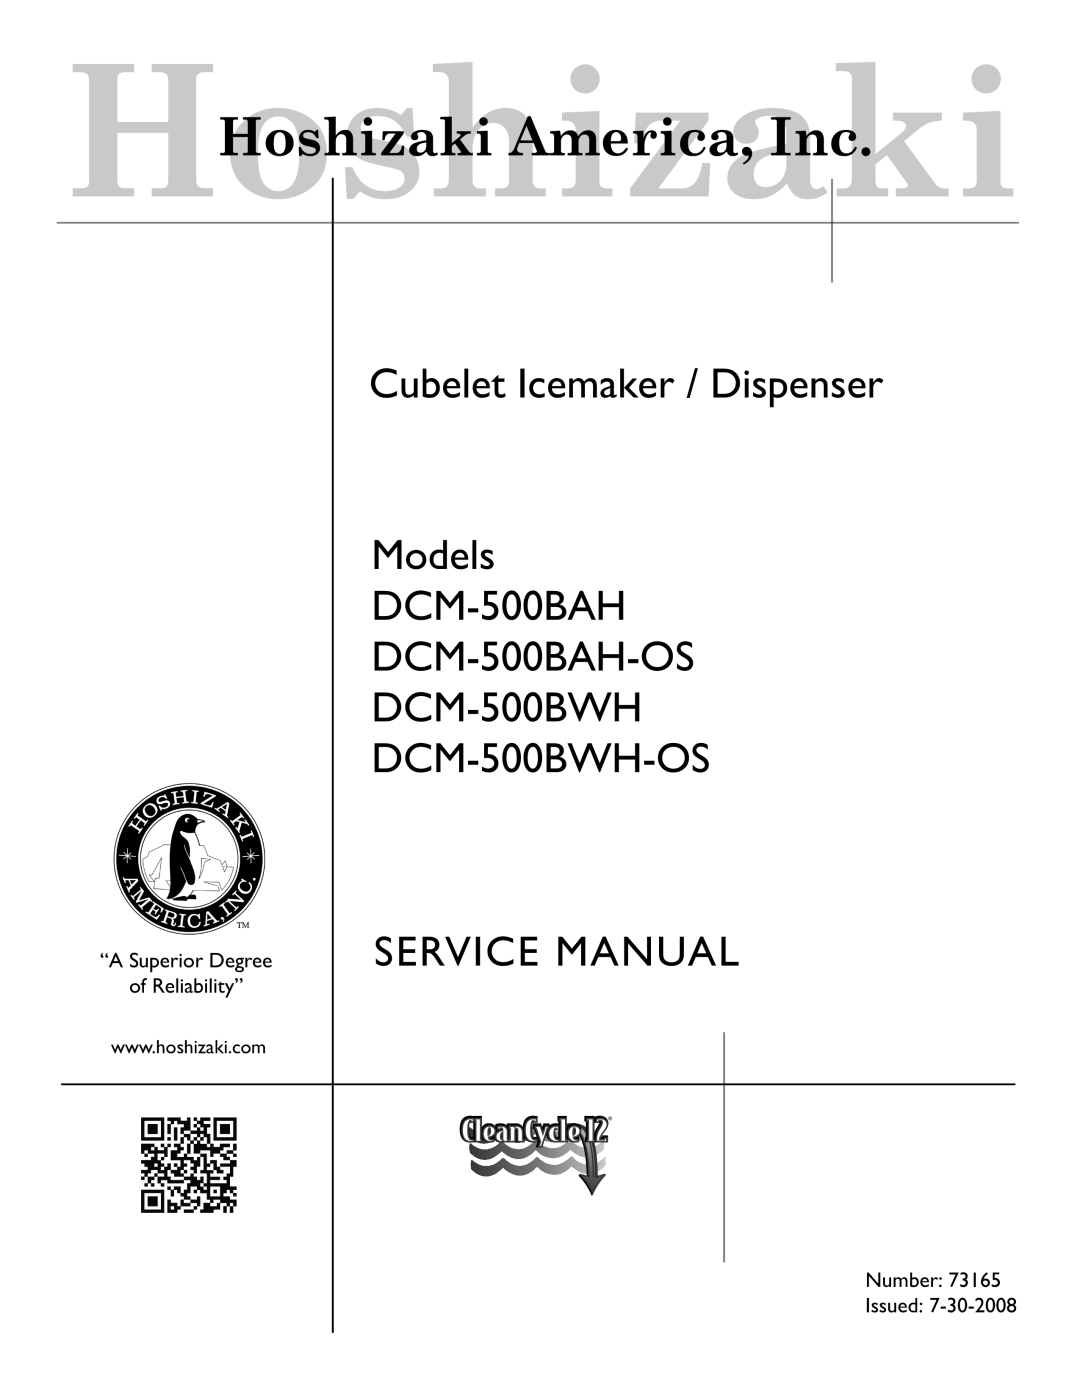 Hoshizaki DCM-500BWH-OS service manual Cubelet Icemaker / Dispenser Models DCM-500BAH DCM-500BAH-OS 